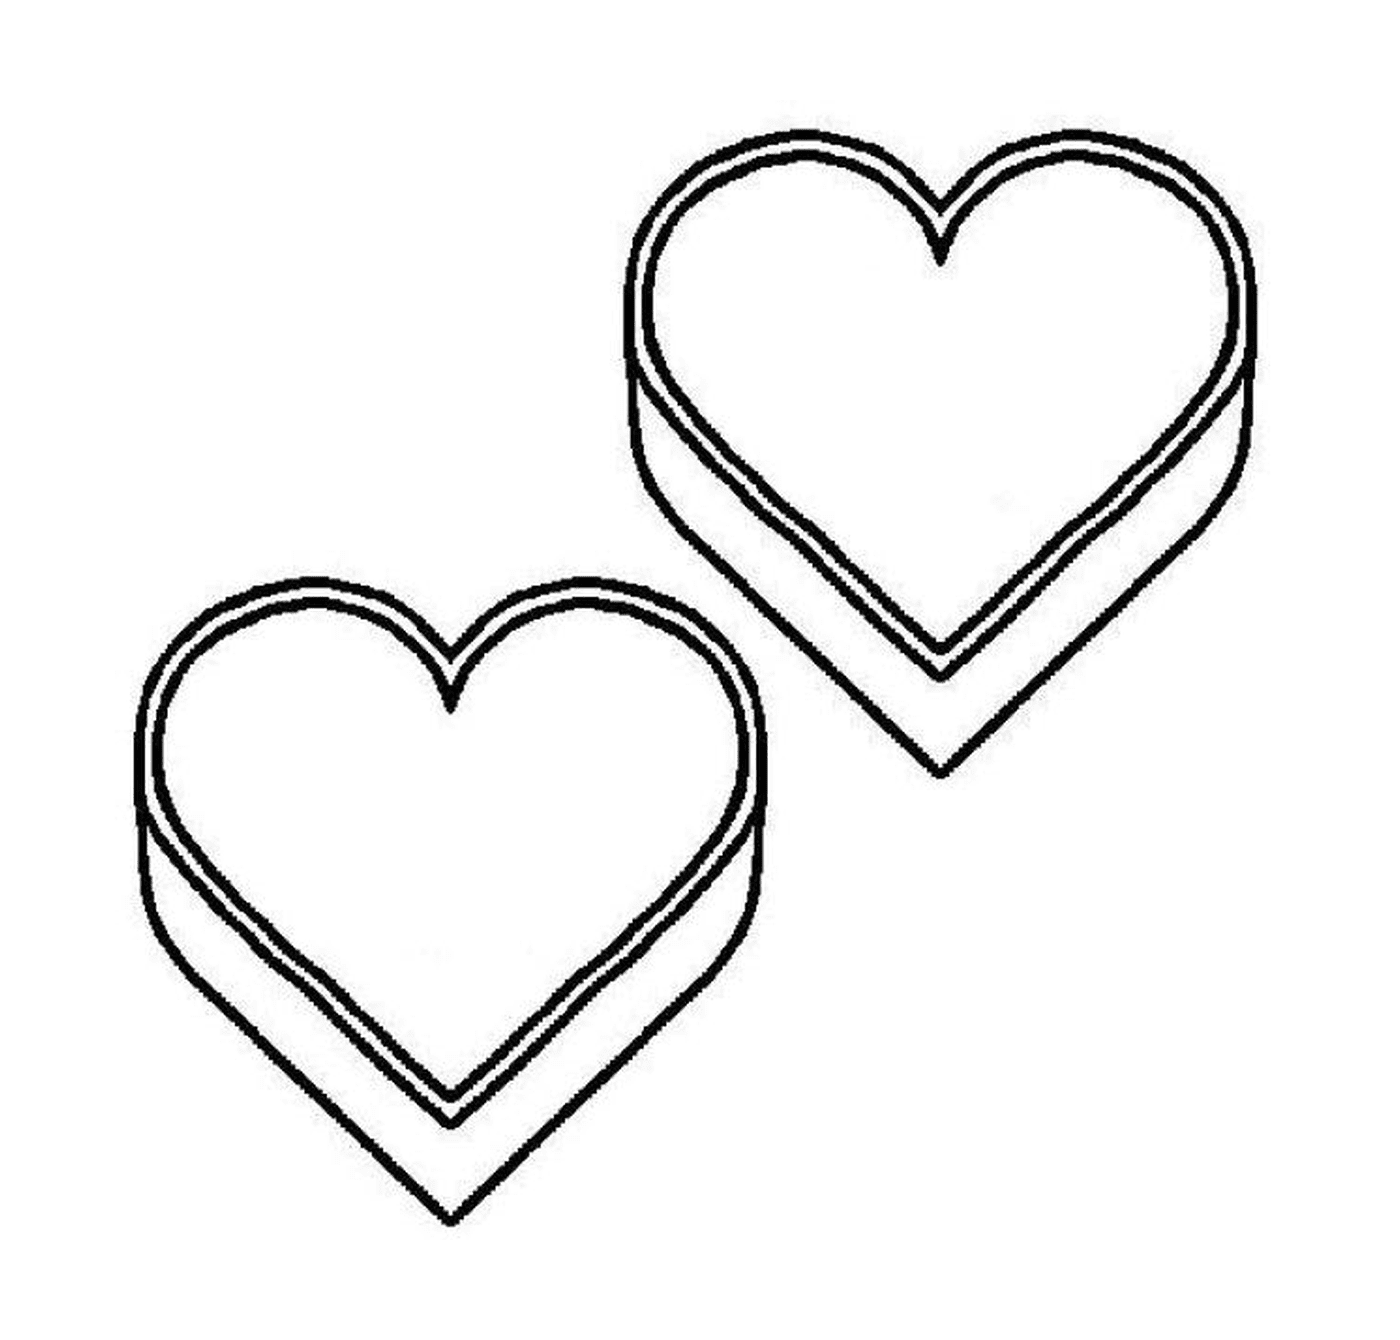  Dos cajas en forma de corazón colocadas lado a lado 